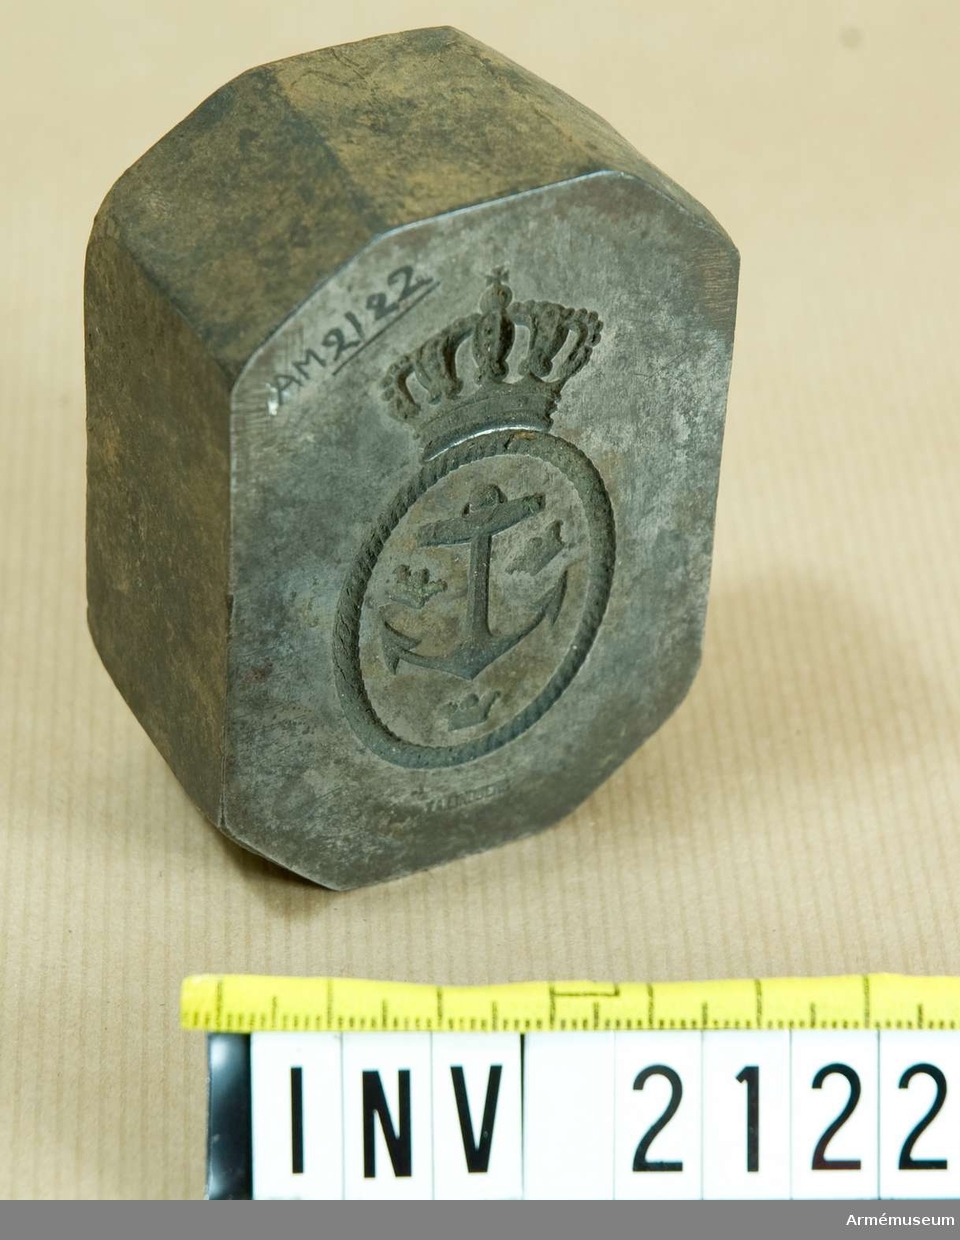 Krönt ankare med tre kronor omgivet av en repram. Oval form. Signerad "J.A.Lindberg".

Samhörande nr är 1677-1699, 1800-1899, 2100-2123.